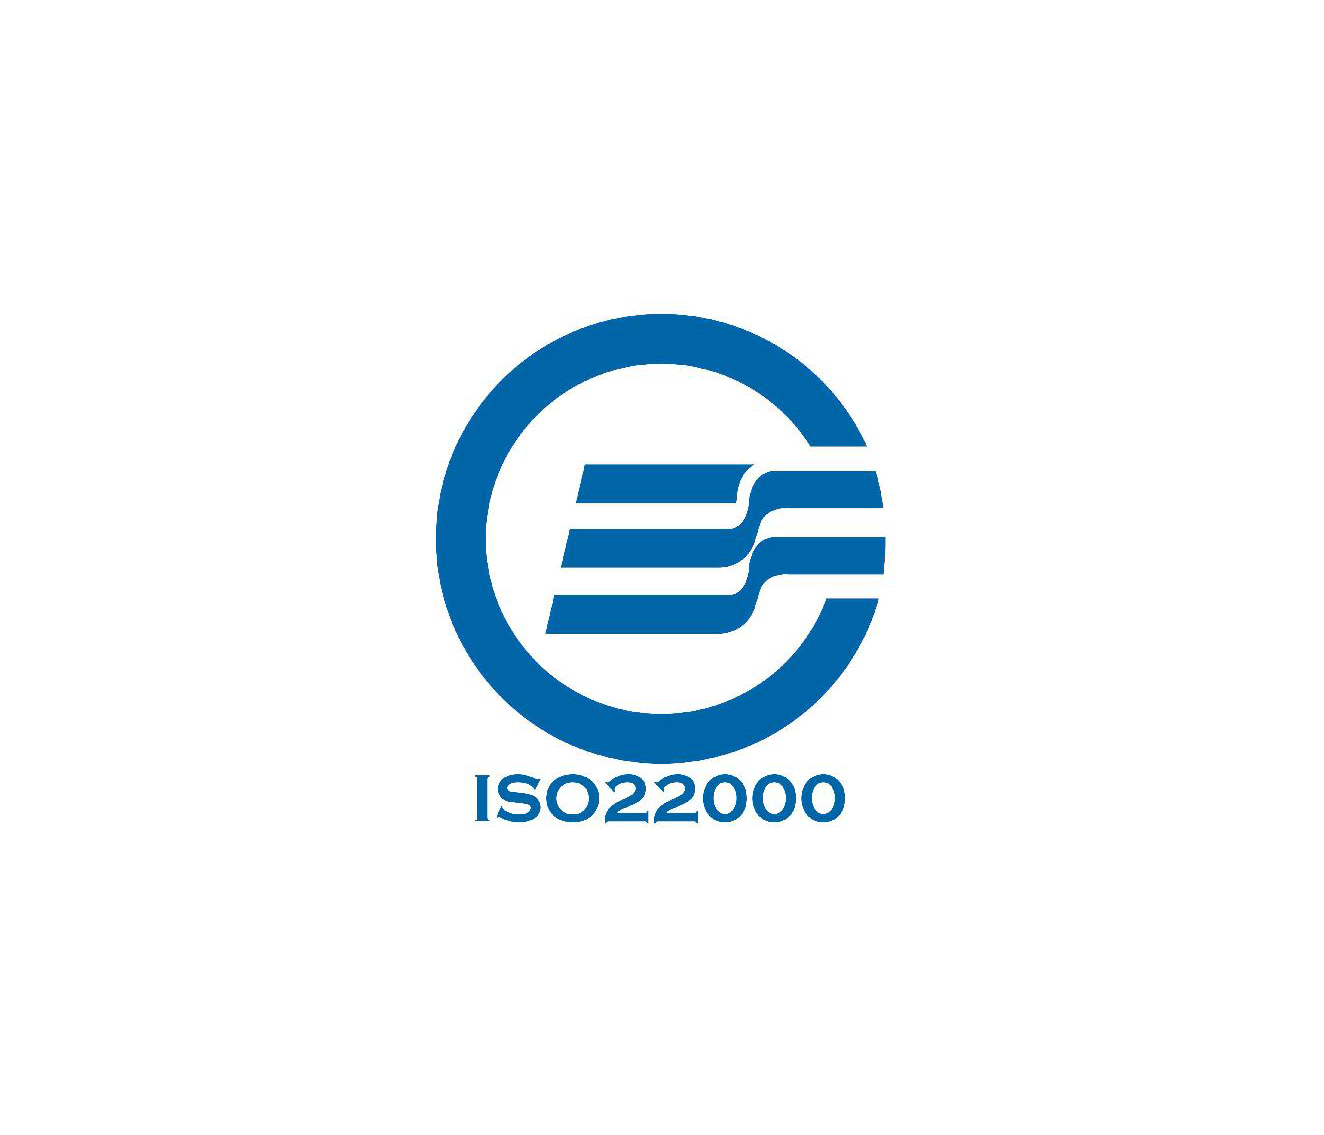 ISO20000认证益处